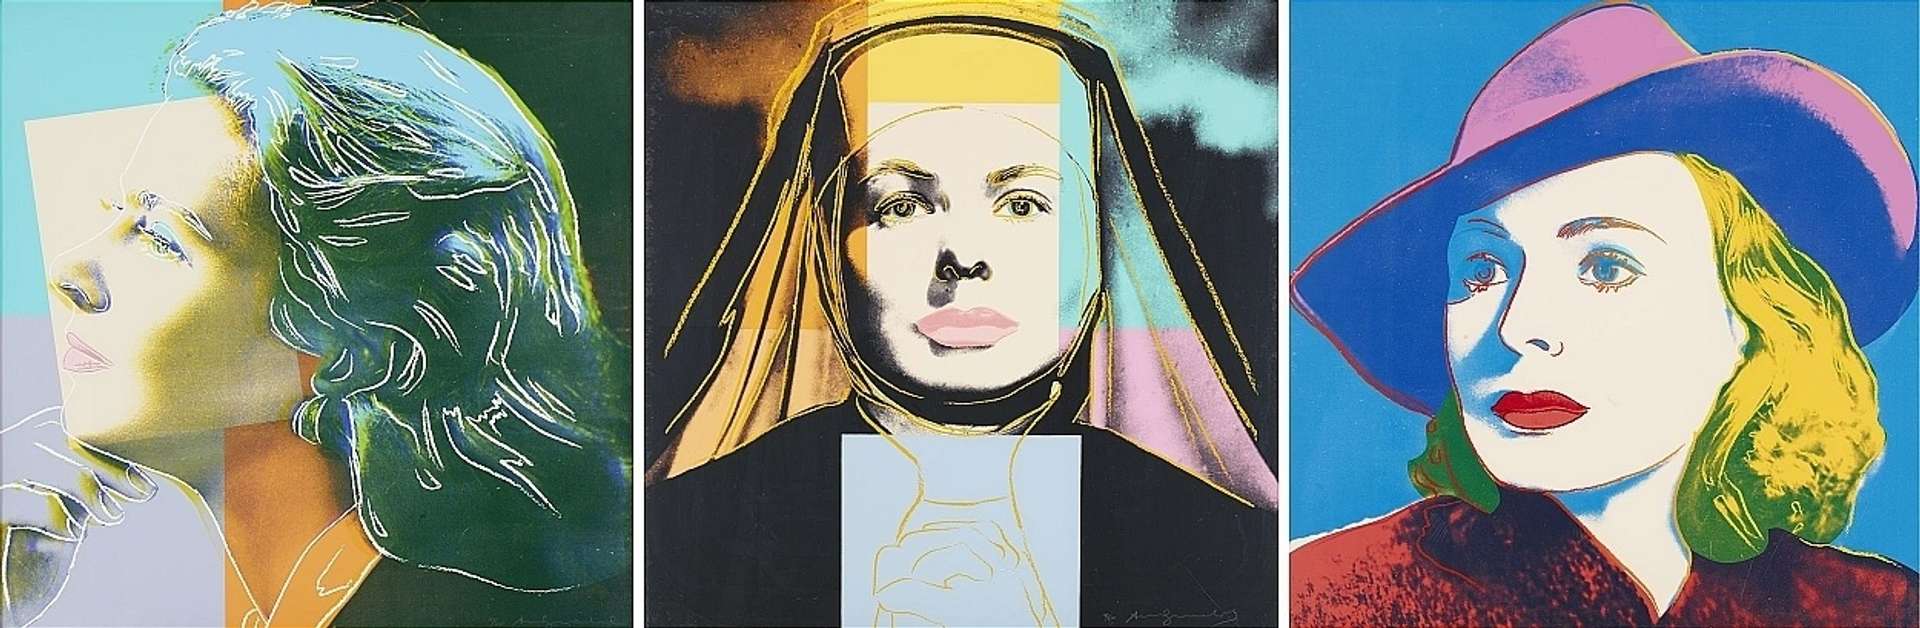 Ingrid Bergman Complete Set (FS II.313-315) by Andy Warhol